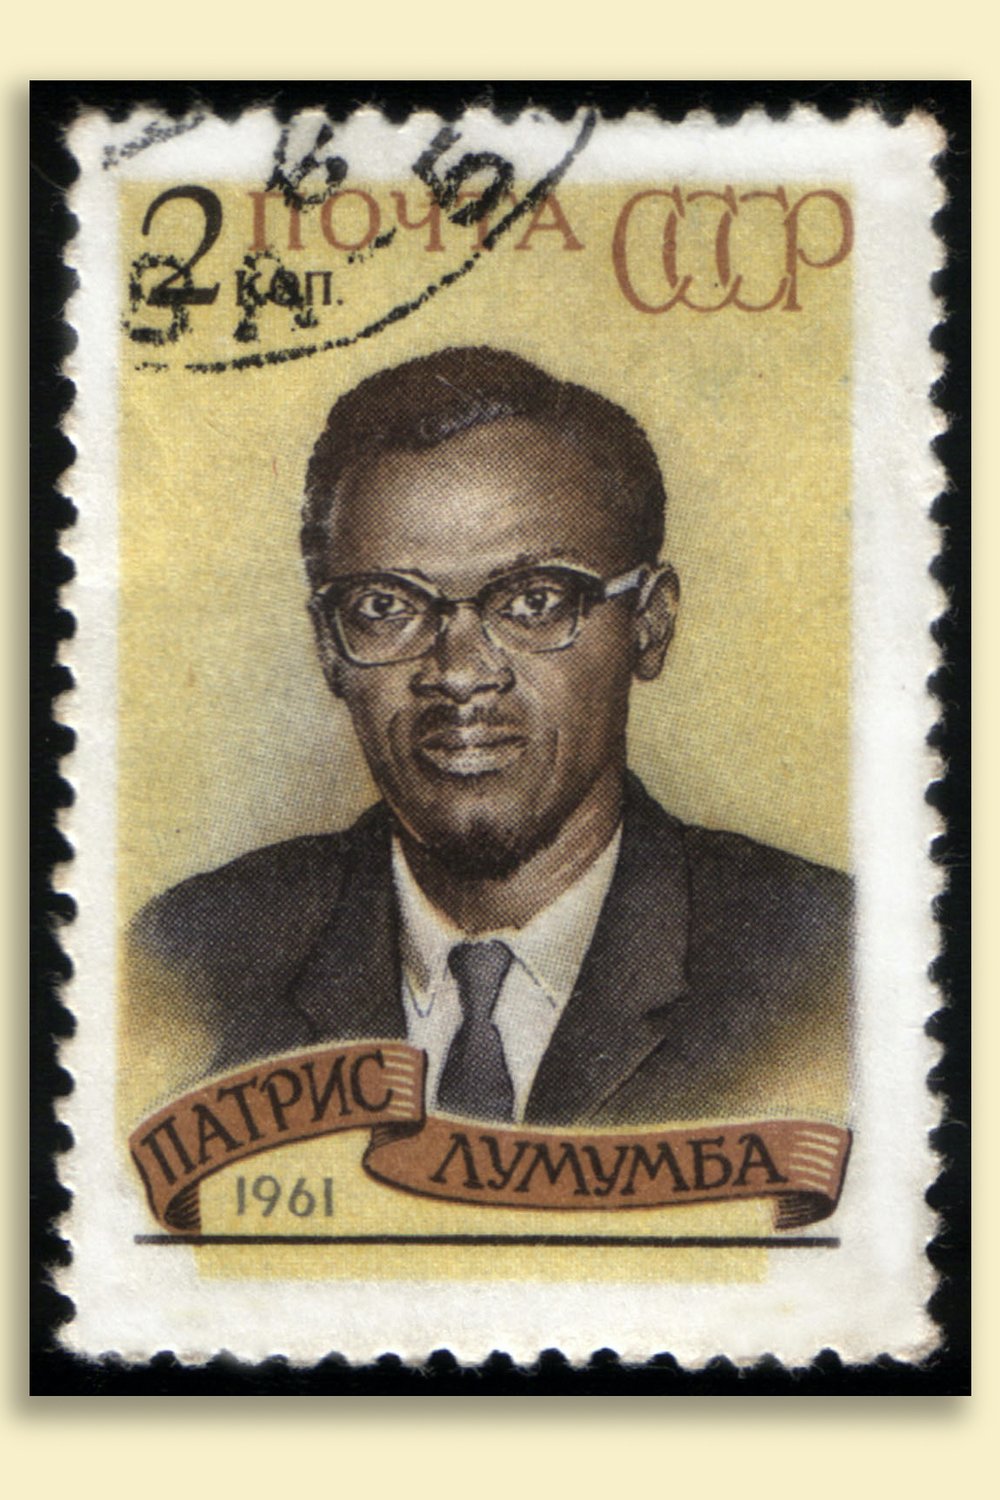 U.S.S.R. Stamp (1961)